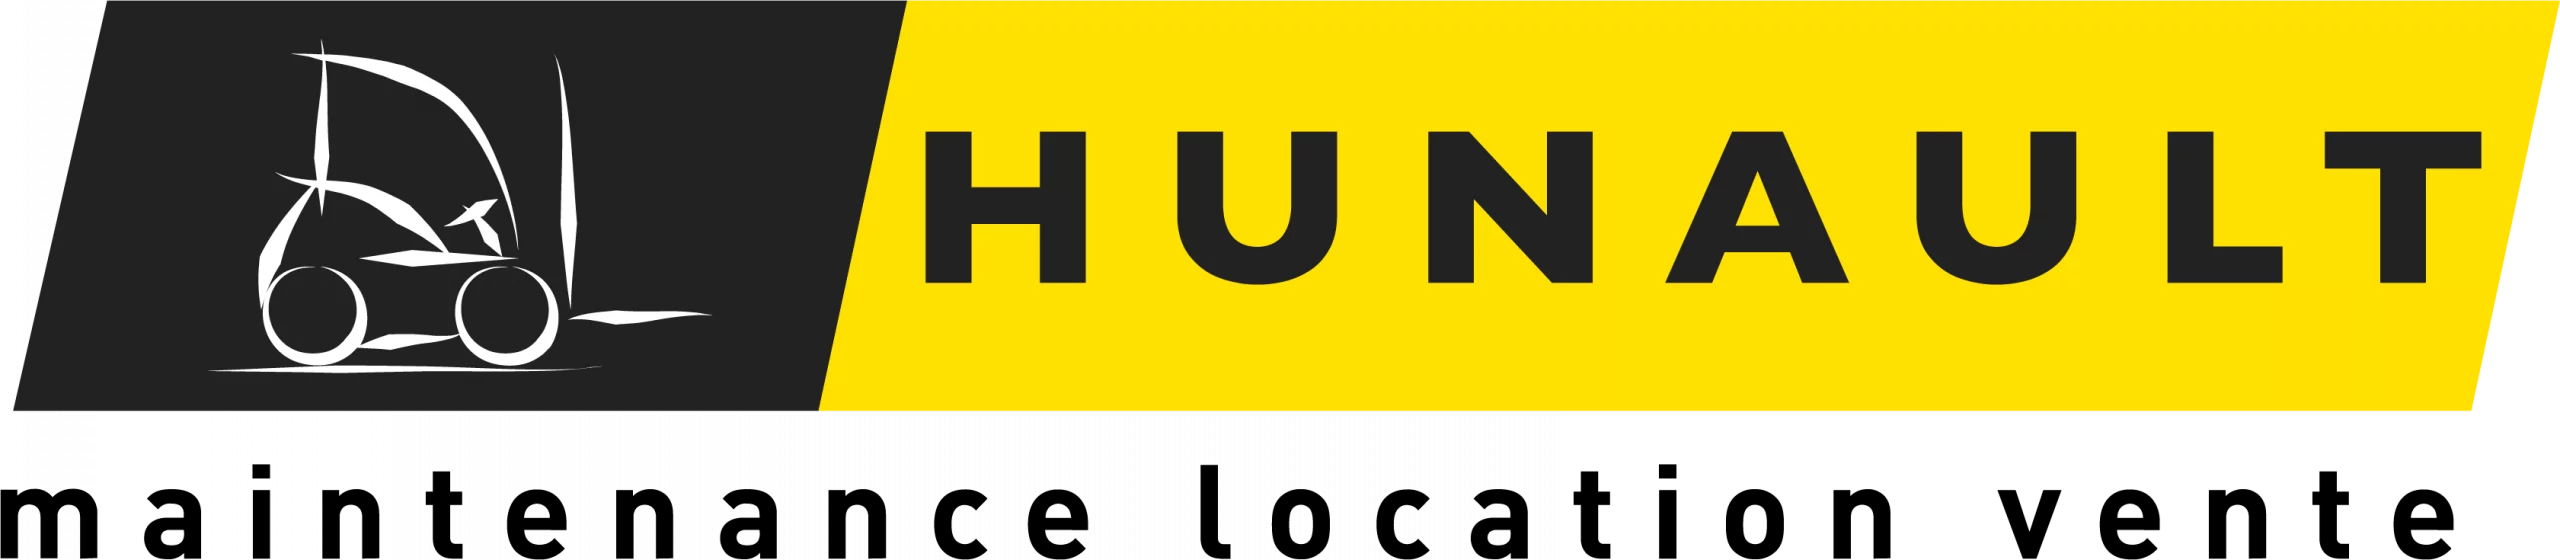 1formation1logement Hunault manutention recherche un apprenant logo